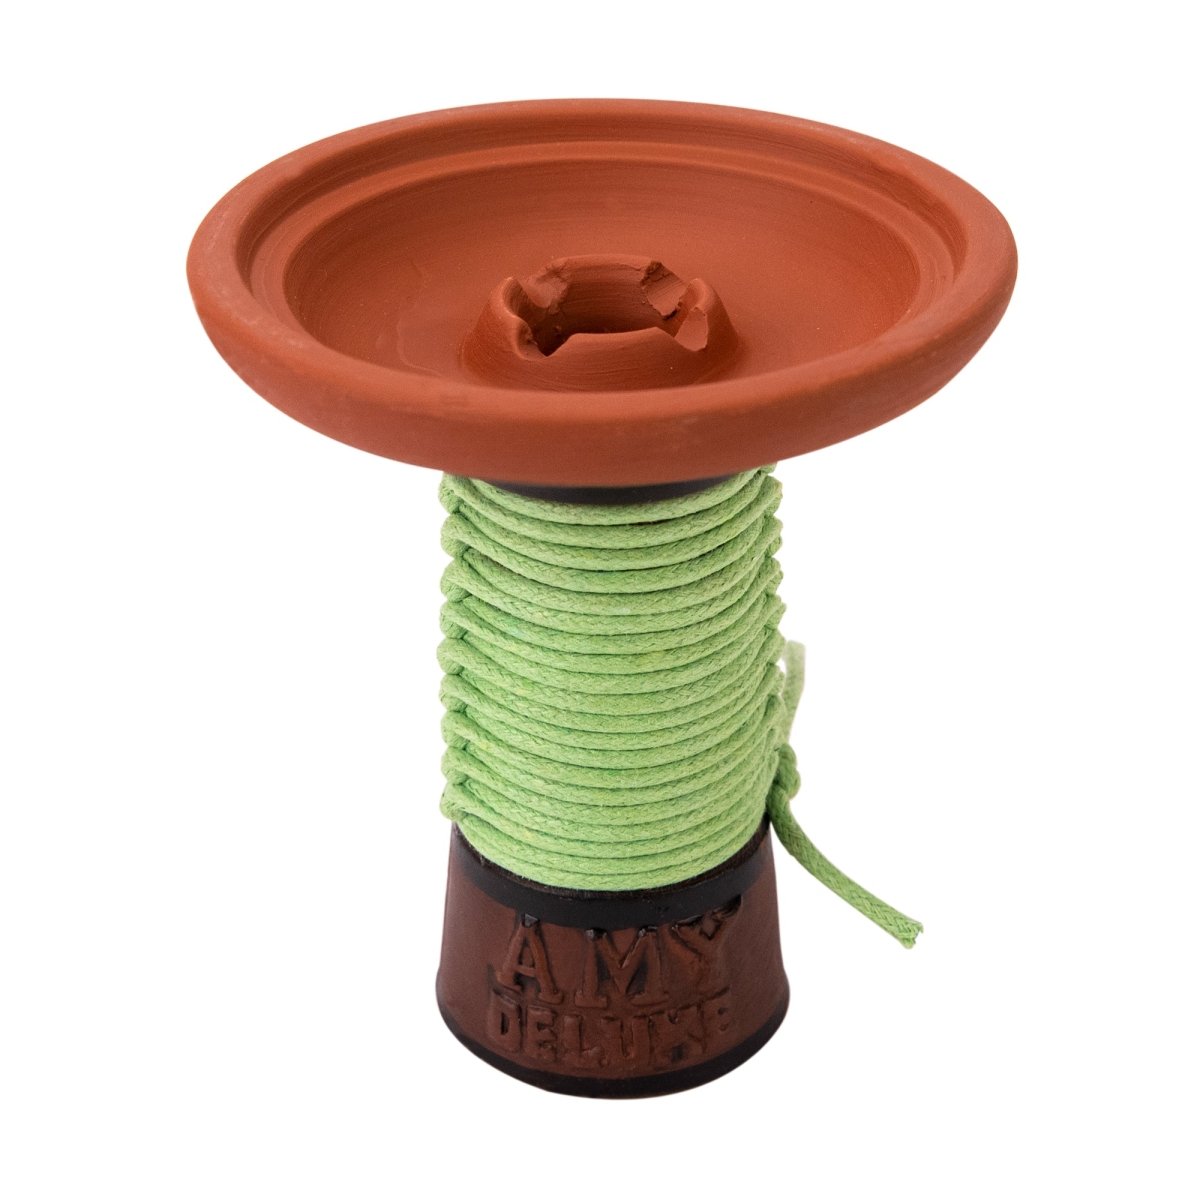 Amy TK012 - Grøn - Amy Shop - Vandpibe phunnel hoved af rødt ler med grønt bånd